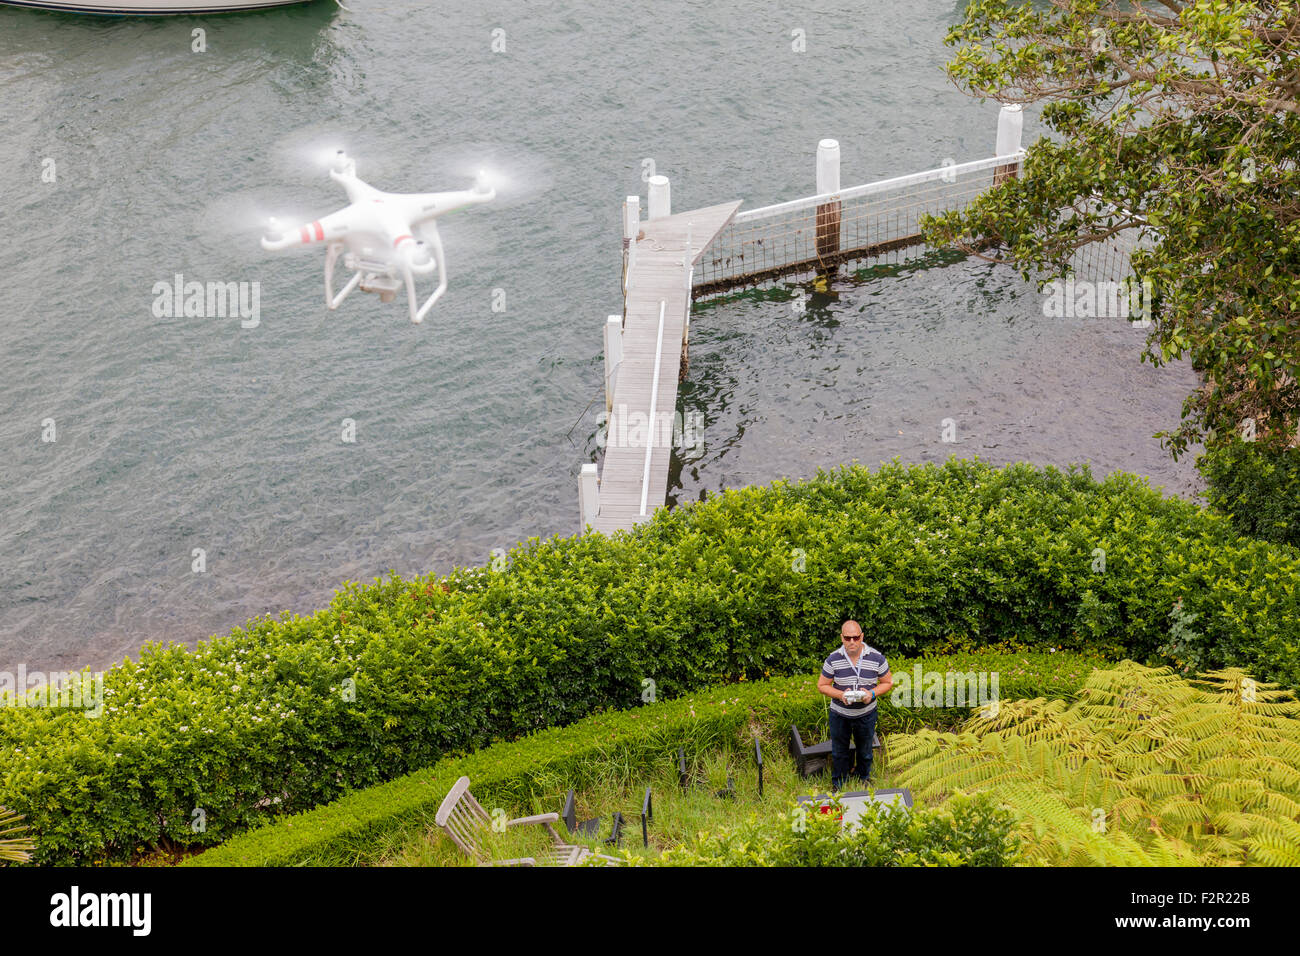 Una vista desde arriba de un Drone volando con un gimbal y cámara conectada. Foto de stock